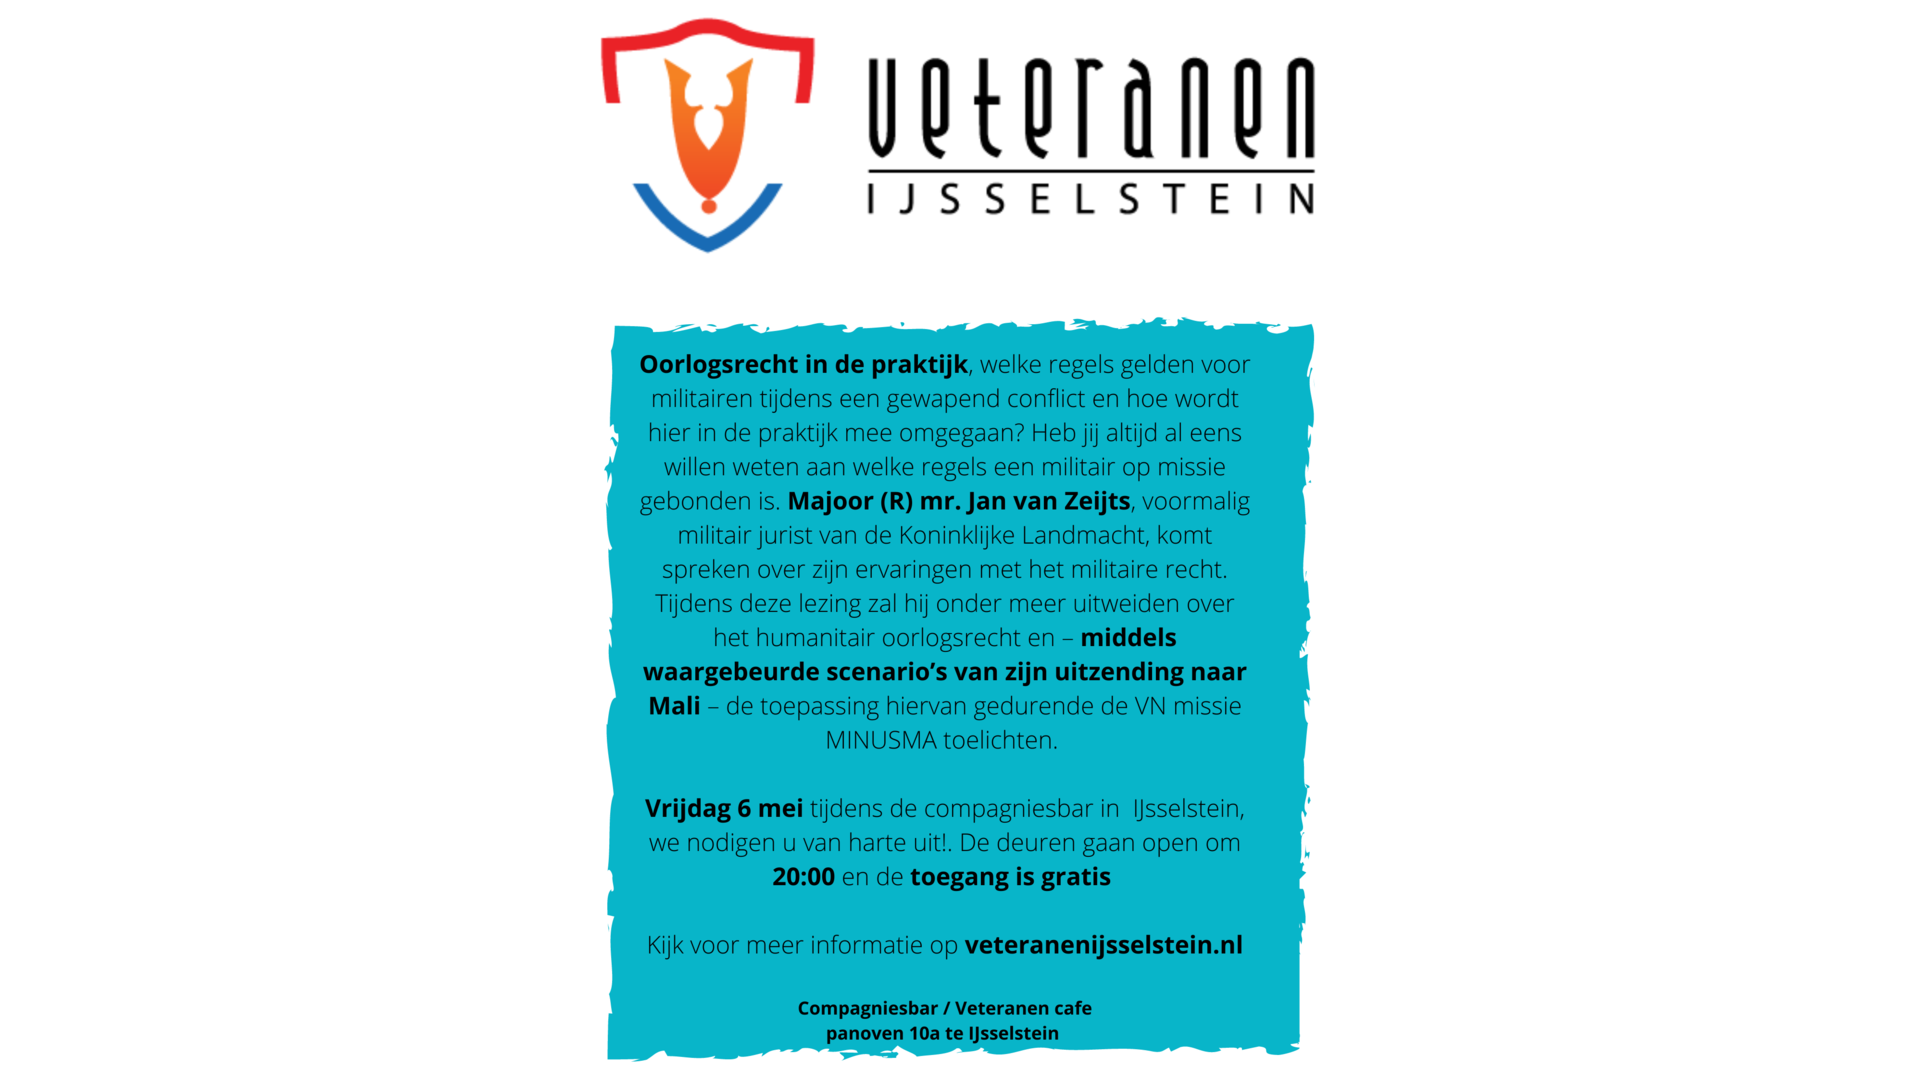 Stichting Veteranen IJsselstein